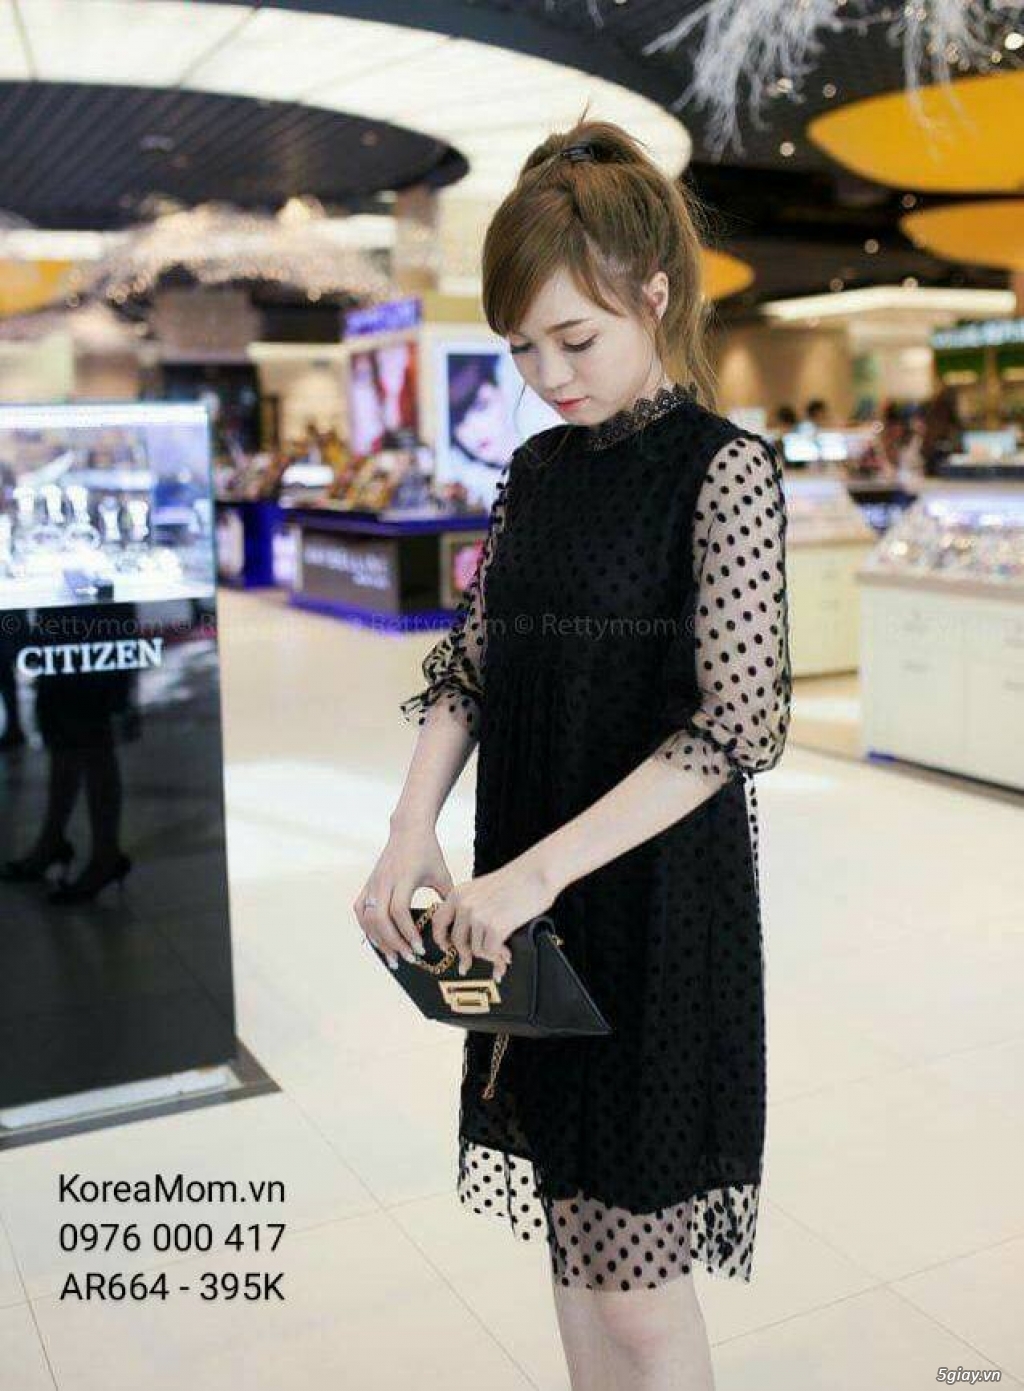 Đầm Bầu KOREA MOM chuyên sỉ và lẻ thời trang bầu Hàn Quốc với giá tốt nhất, thời trang sành điệu - 31